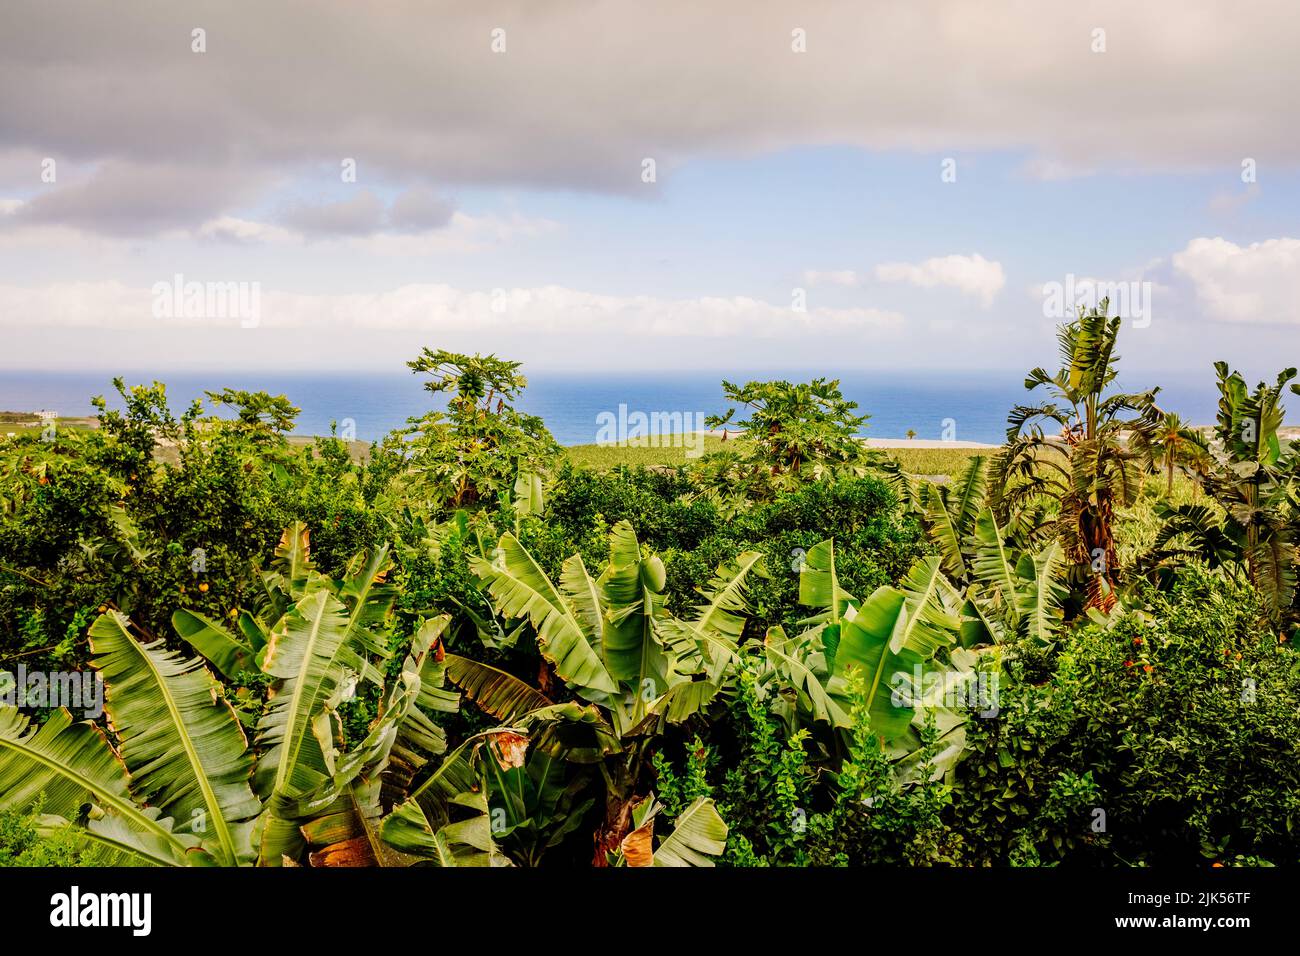 Plantation de bananiers et de fruits tropicaux près de la mer, sur l'île des Canaries de Ténérife. Banque D'Images